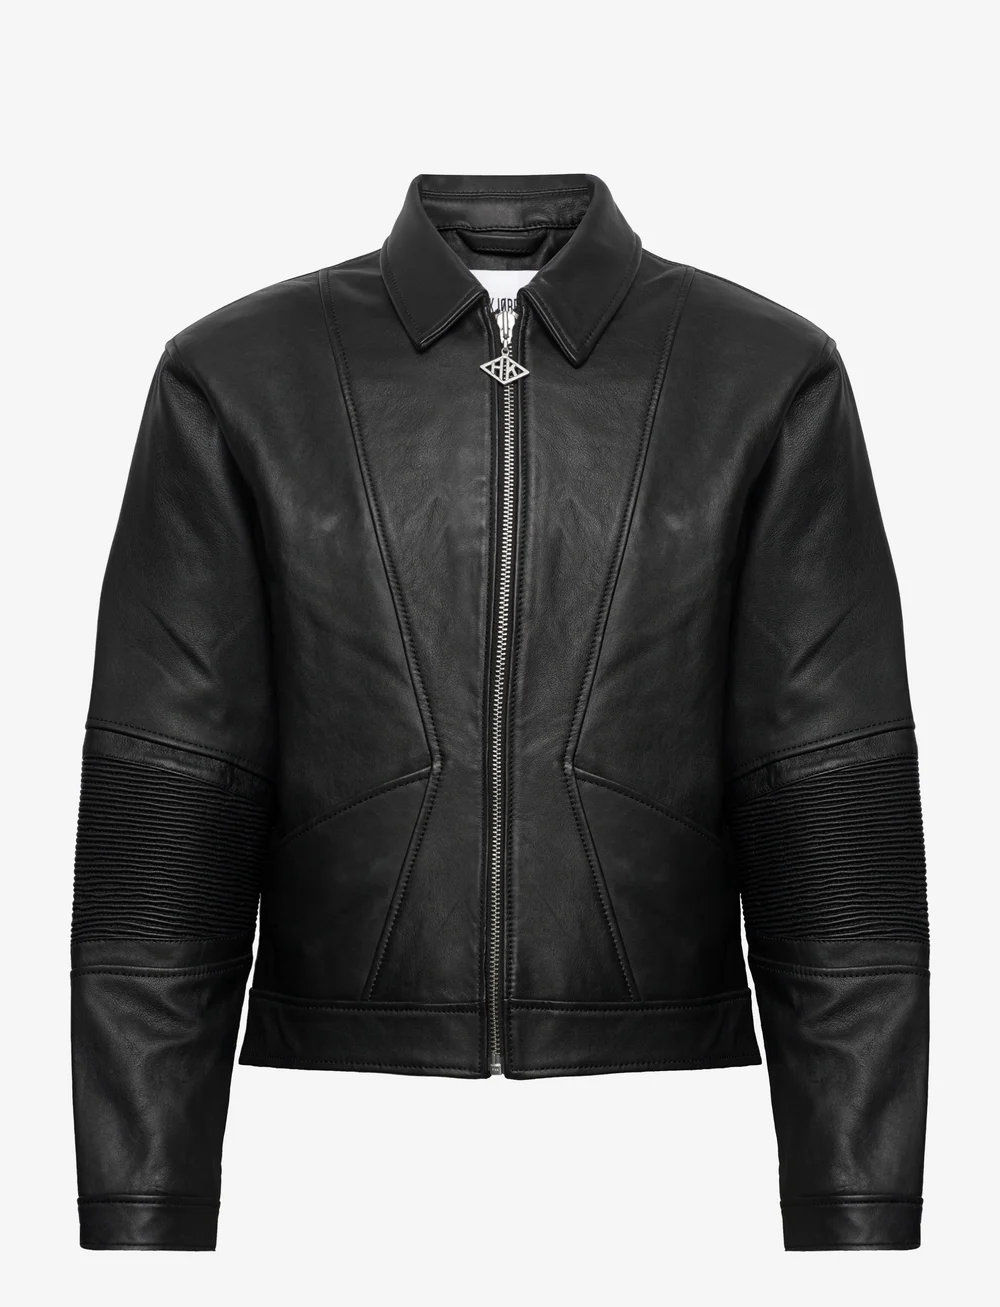 HAN Kjøbenhavn Cropped Leather Jacket - 6000 kr. Læderjakker fra HAN Kjøbenhavn online på Boozt.com. Hurtig levering & nem retur